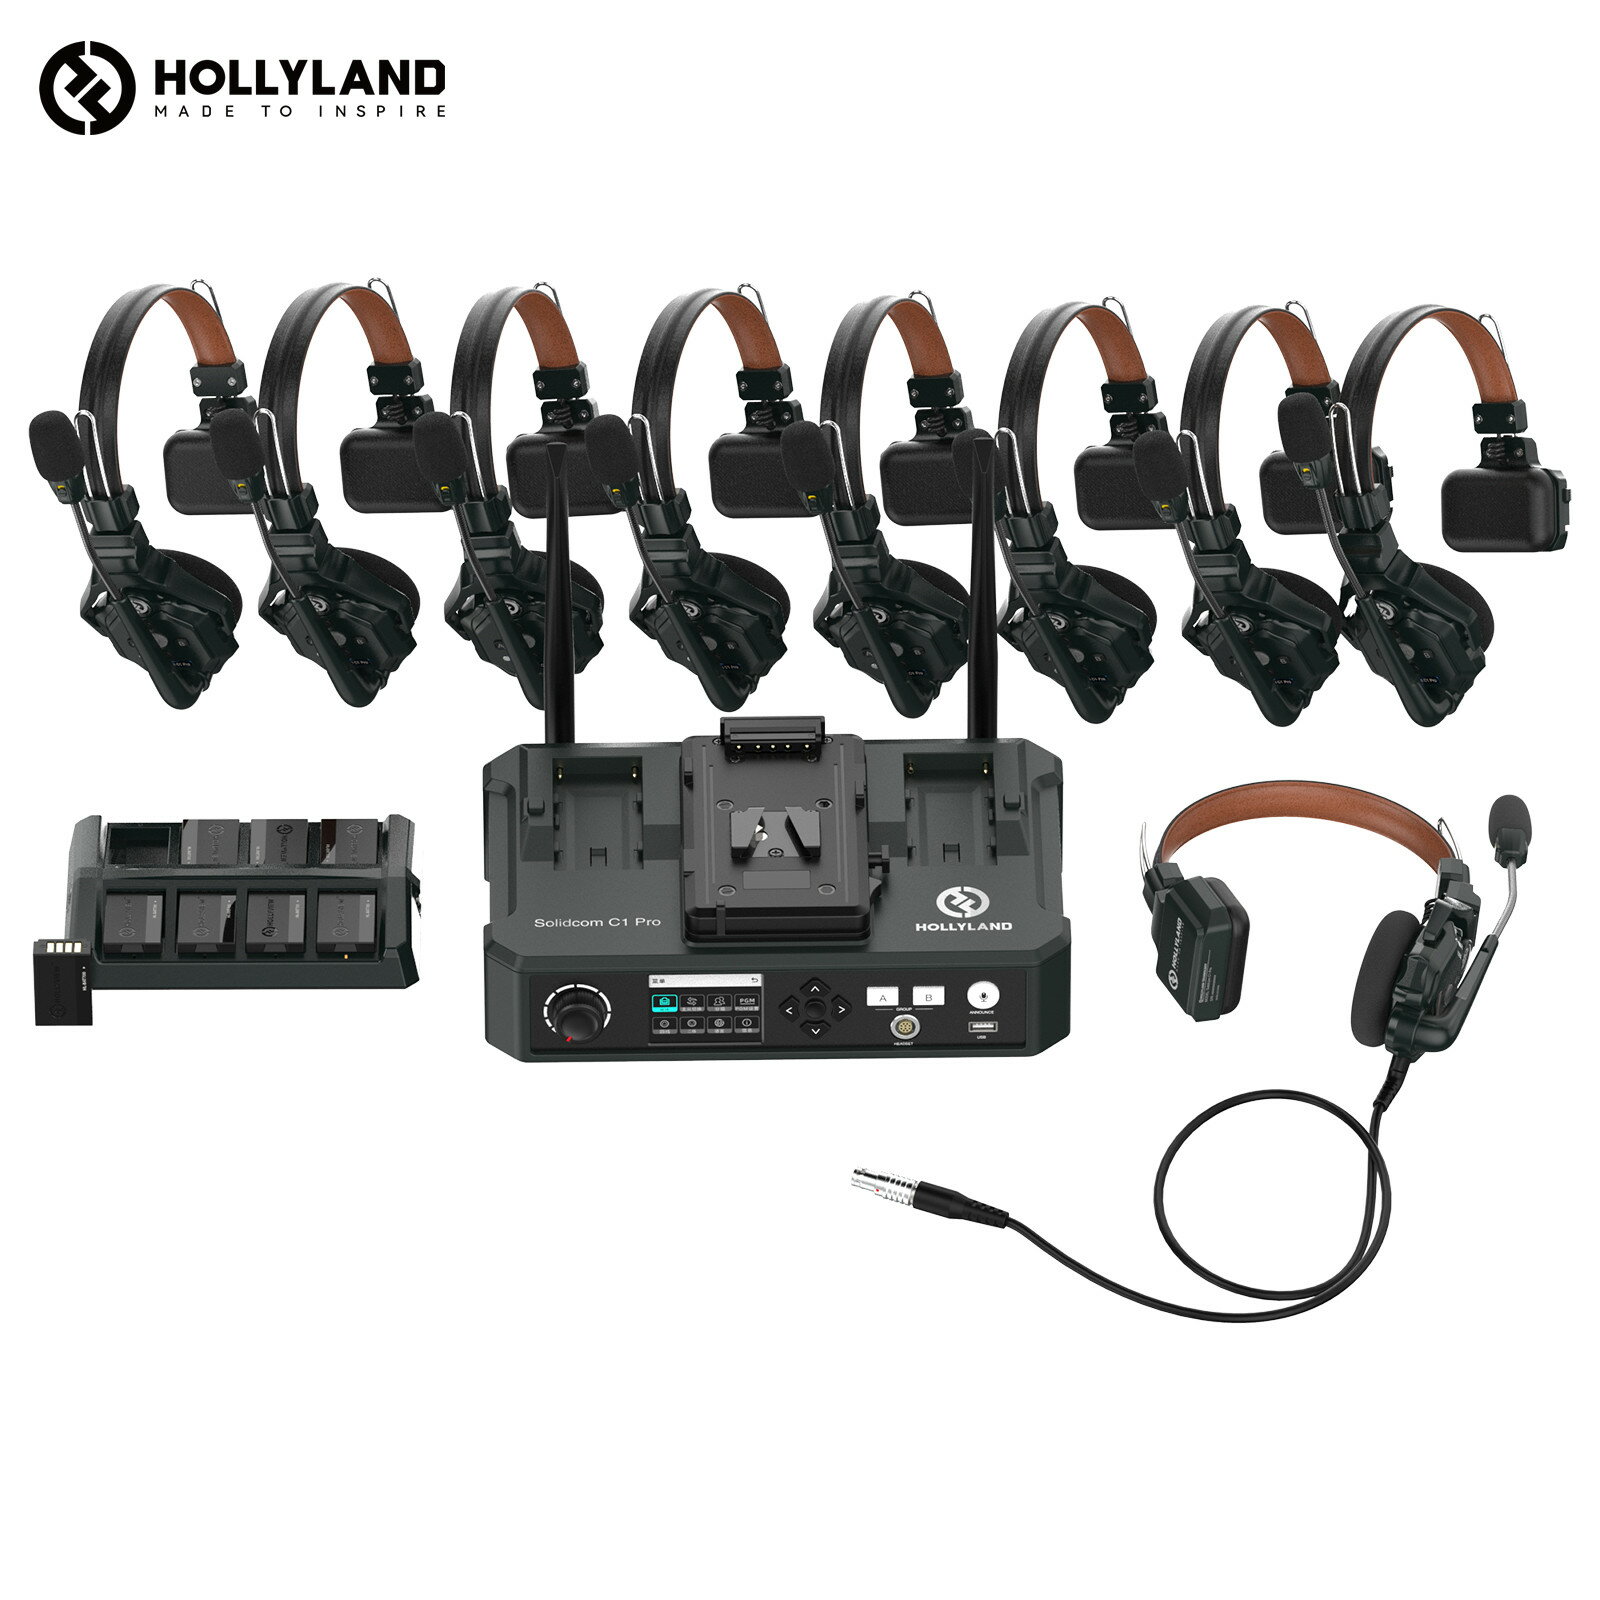 【特典付き】Hollyland Solidcom C1 Pro-HUB8S ワイヤレスインカム 9台セット ノイズキャンセリング・PTT・ミュート…